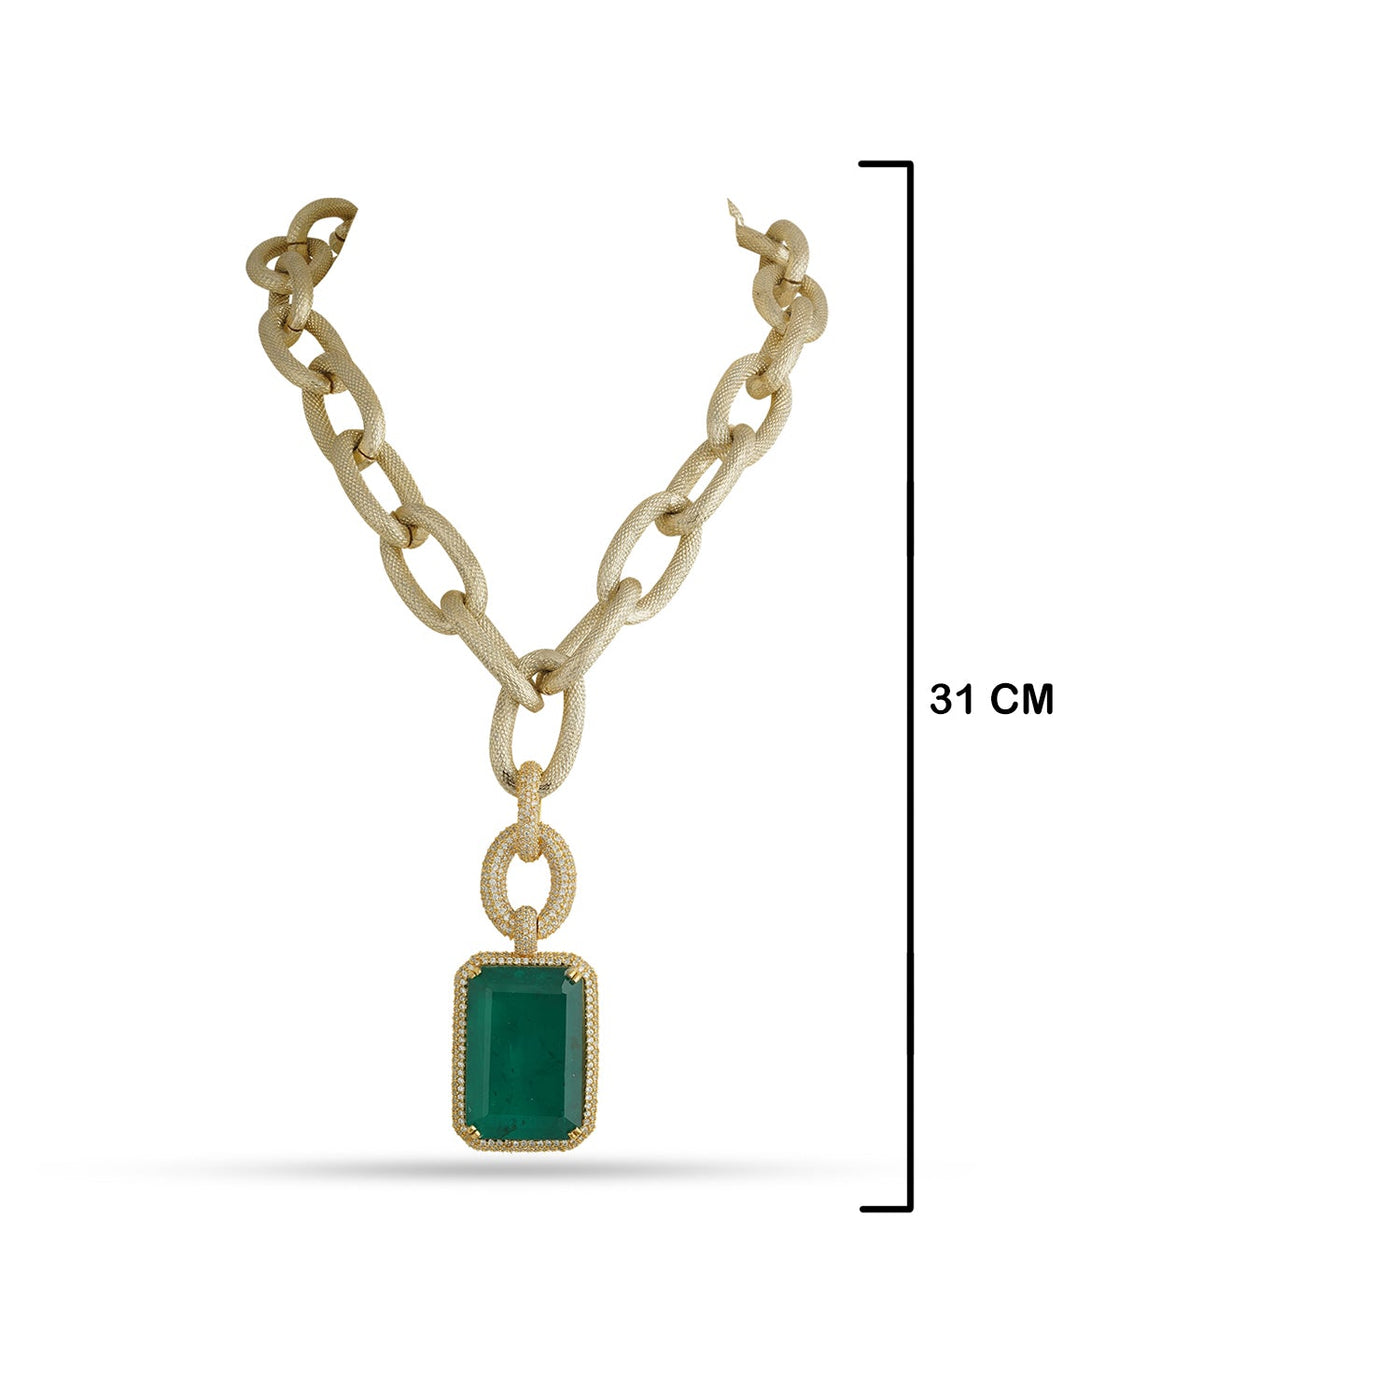 Adrena - Dark Green Pendant Chain Necklace